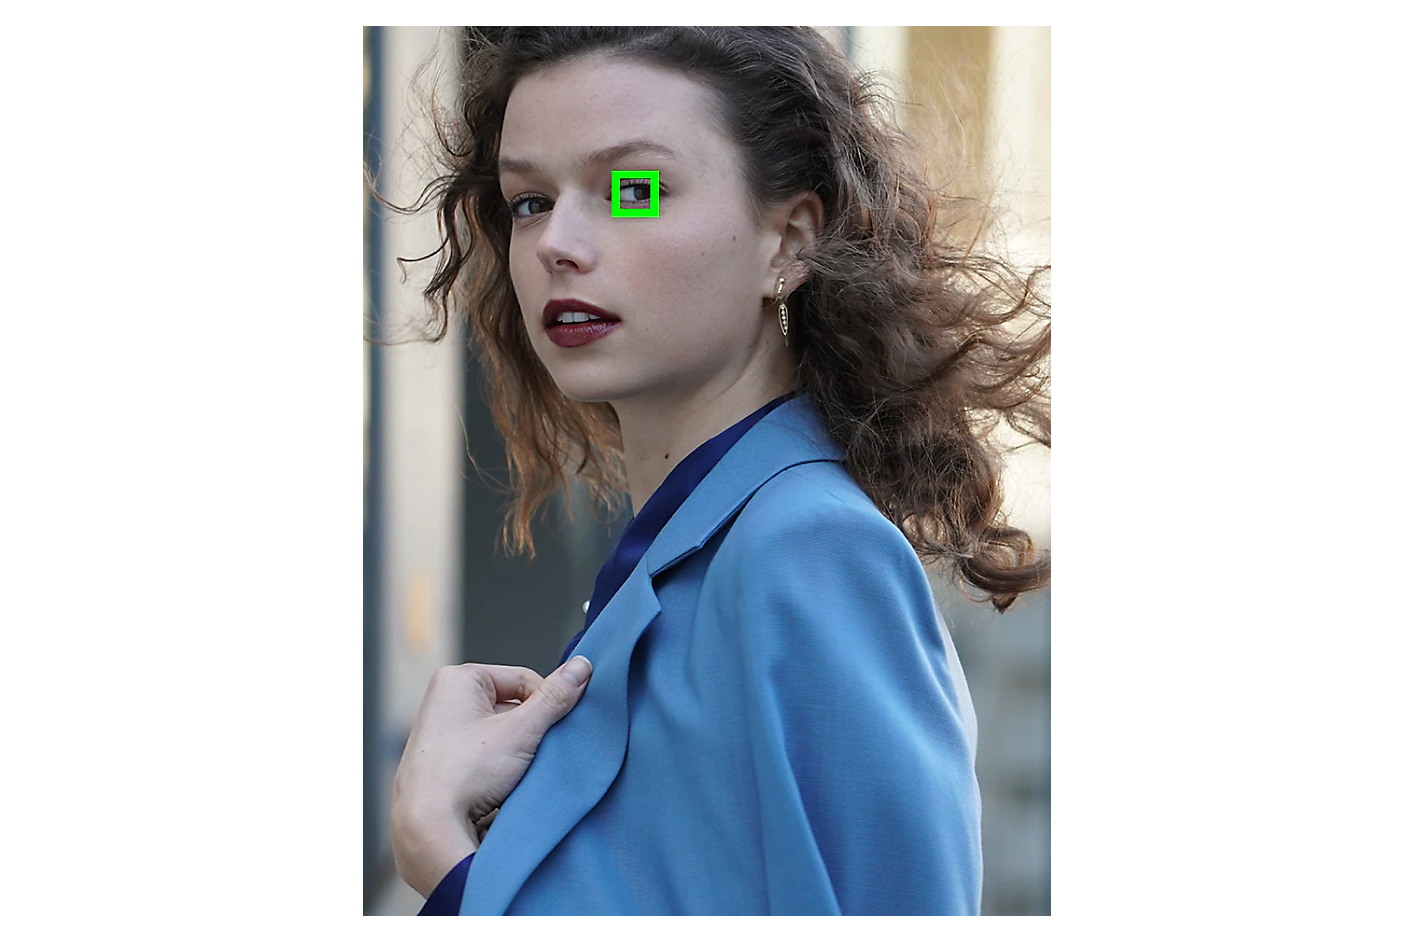 Une femme vêtue d'une veste bleue regarde de côté et un carré vert encadre un œil.